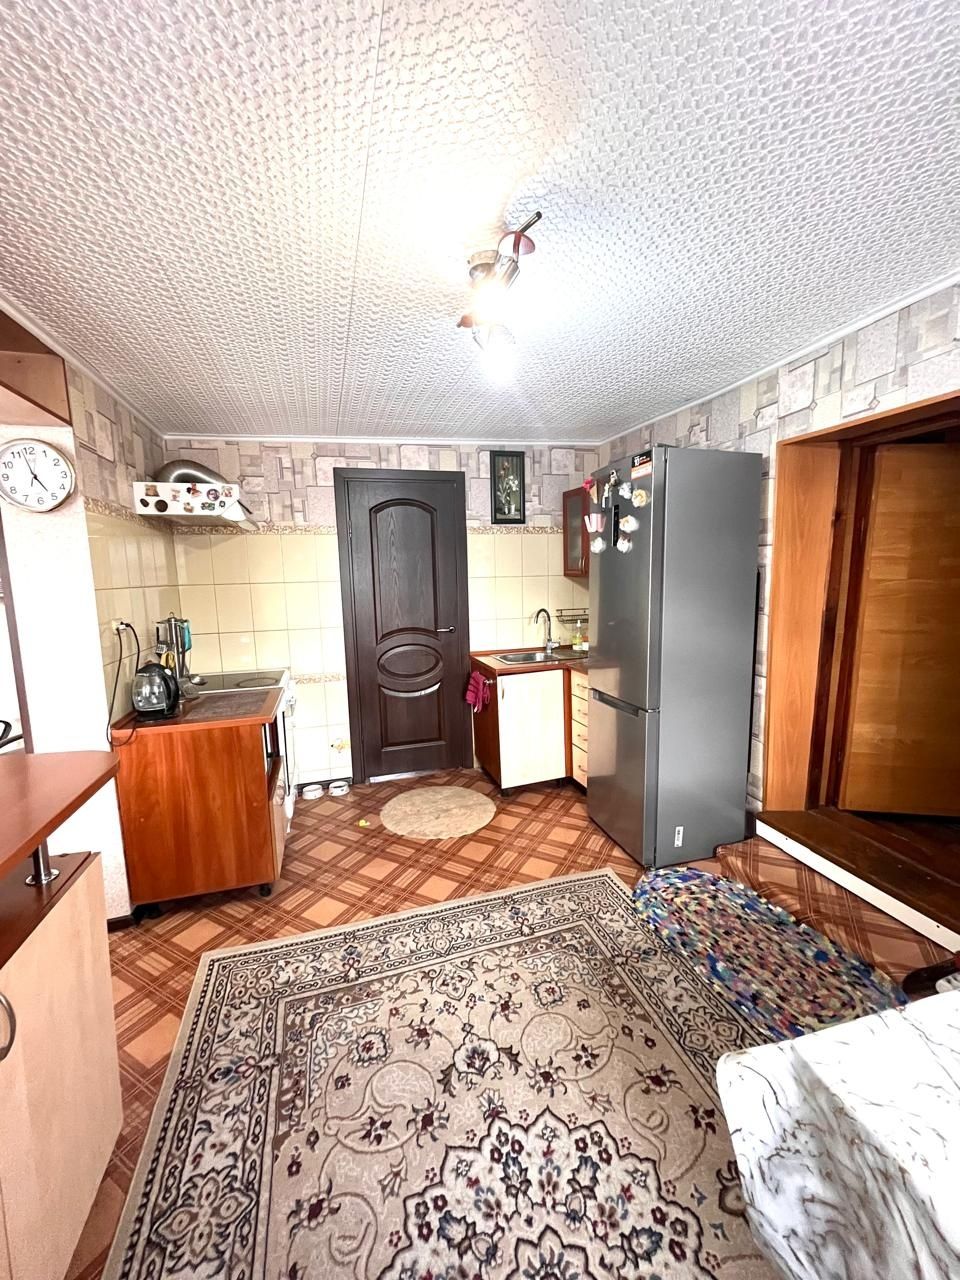 Продается 3х комнатный дом в в посёлке Красина